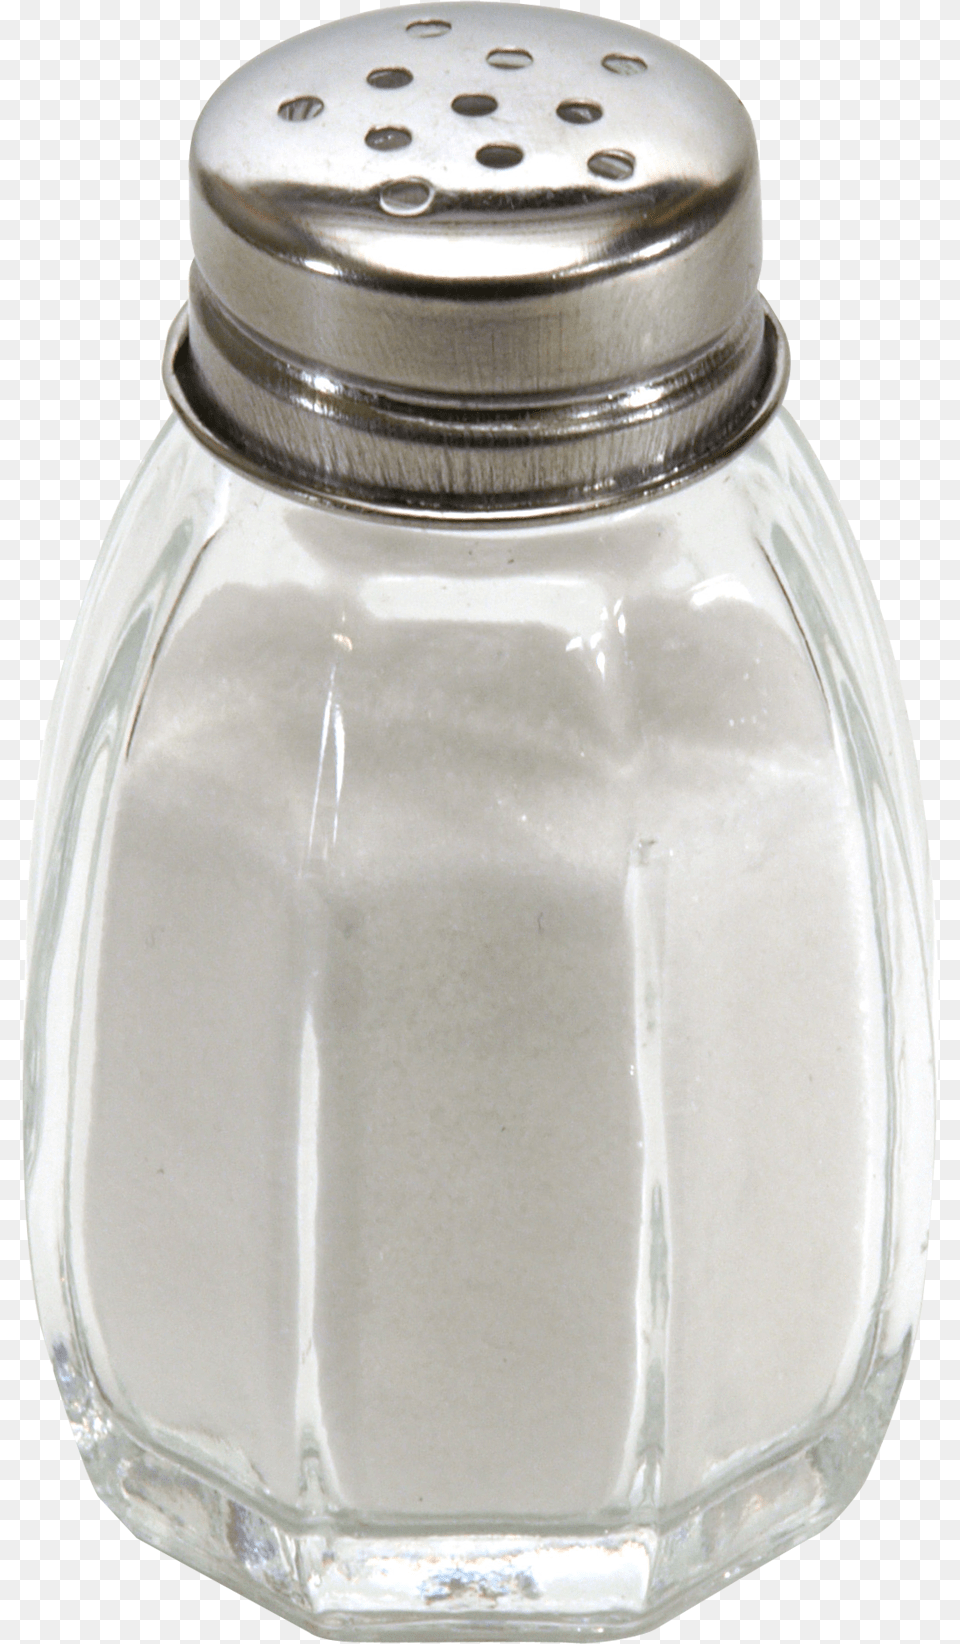 Salt Images Background Salt, Bottle, Jar, Shaker, Powder Png Image